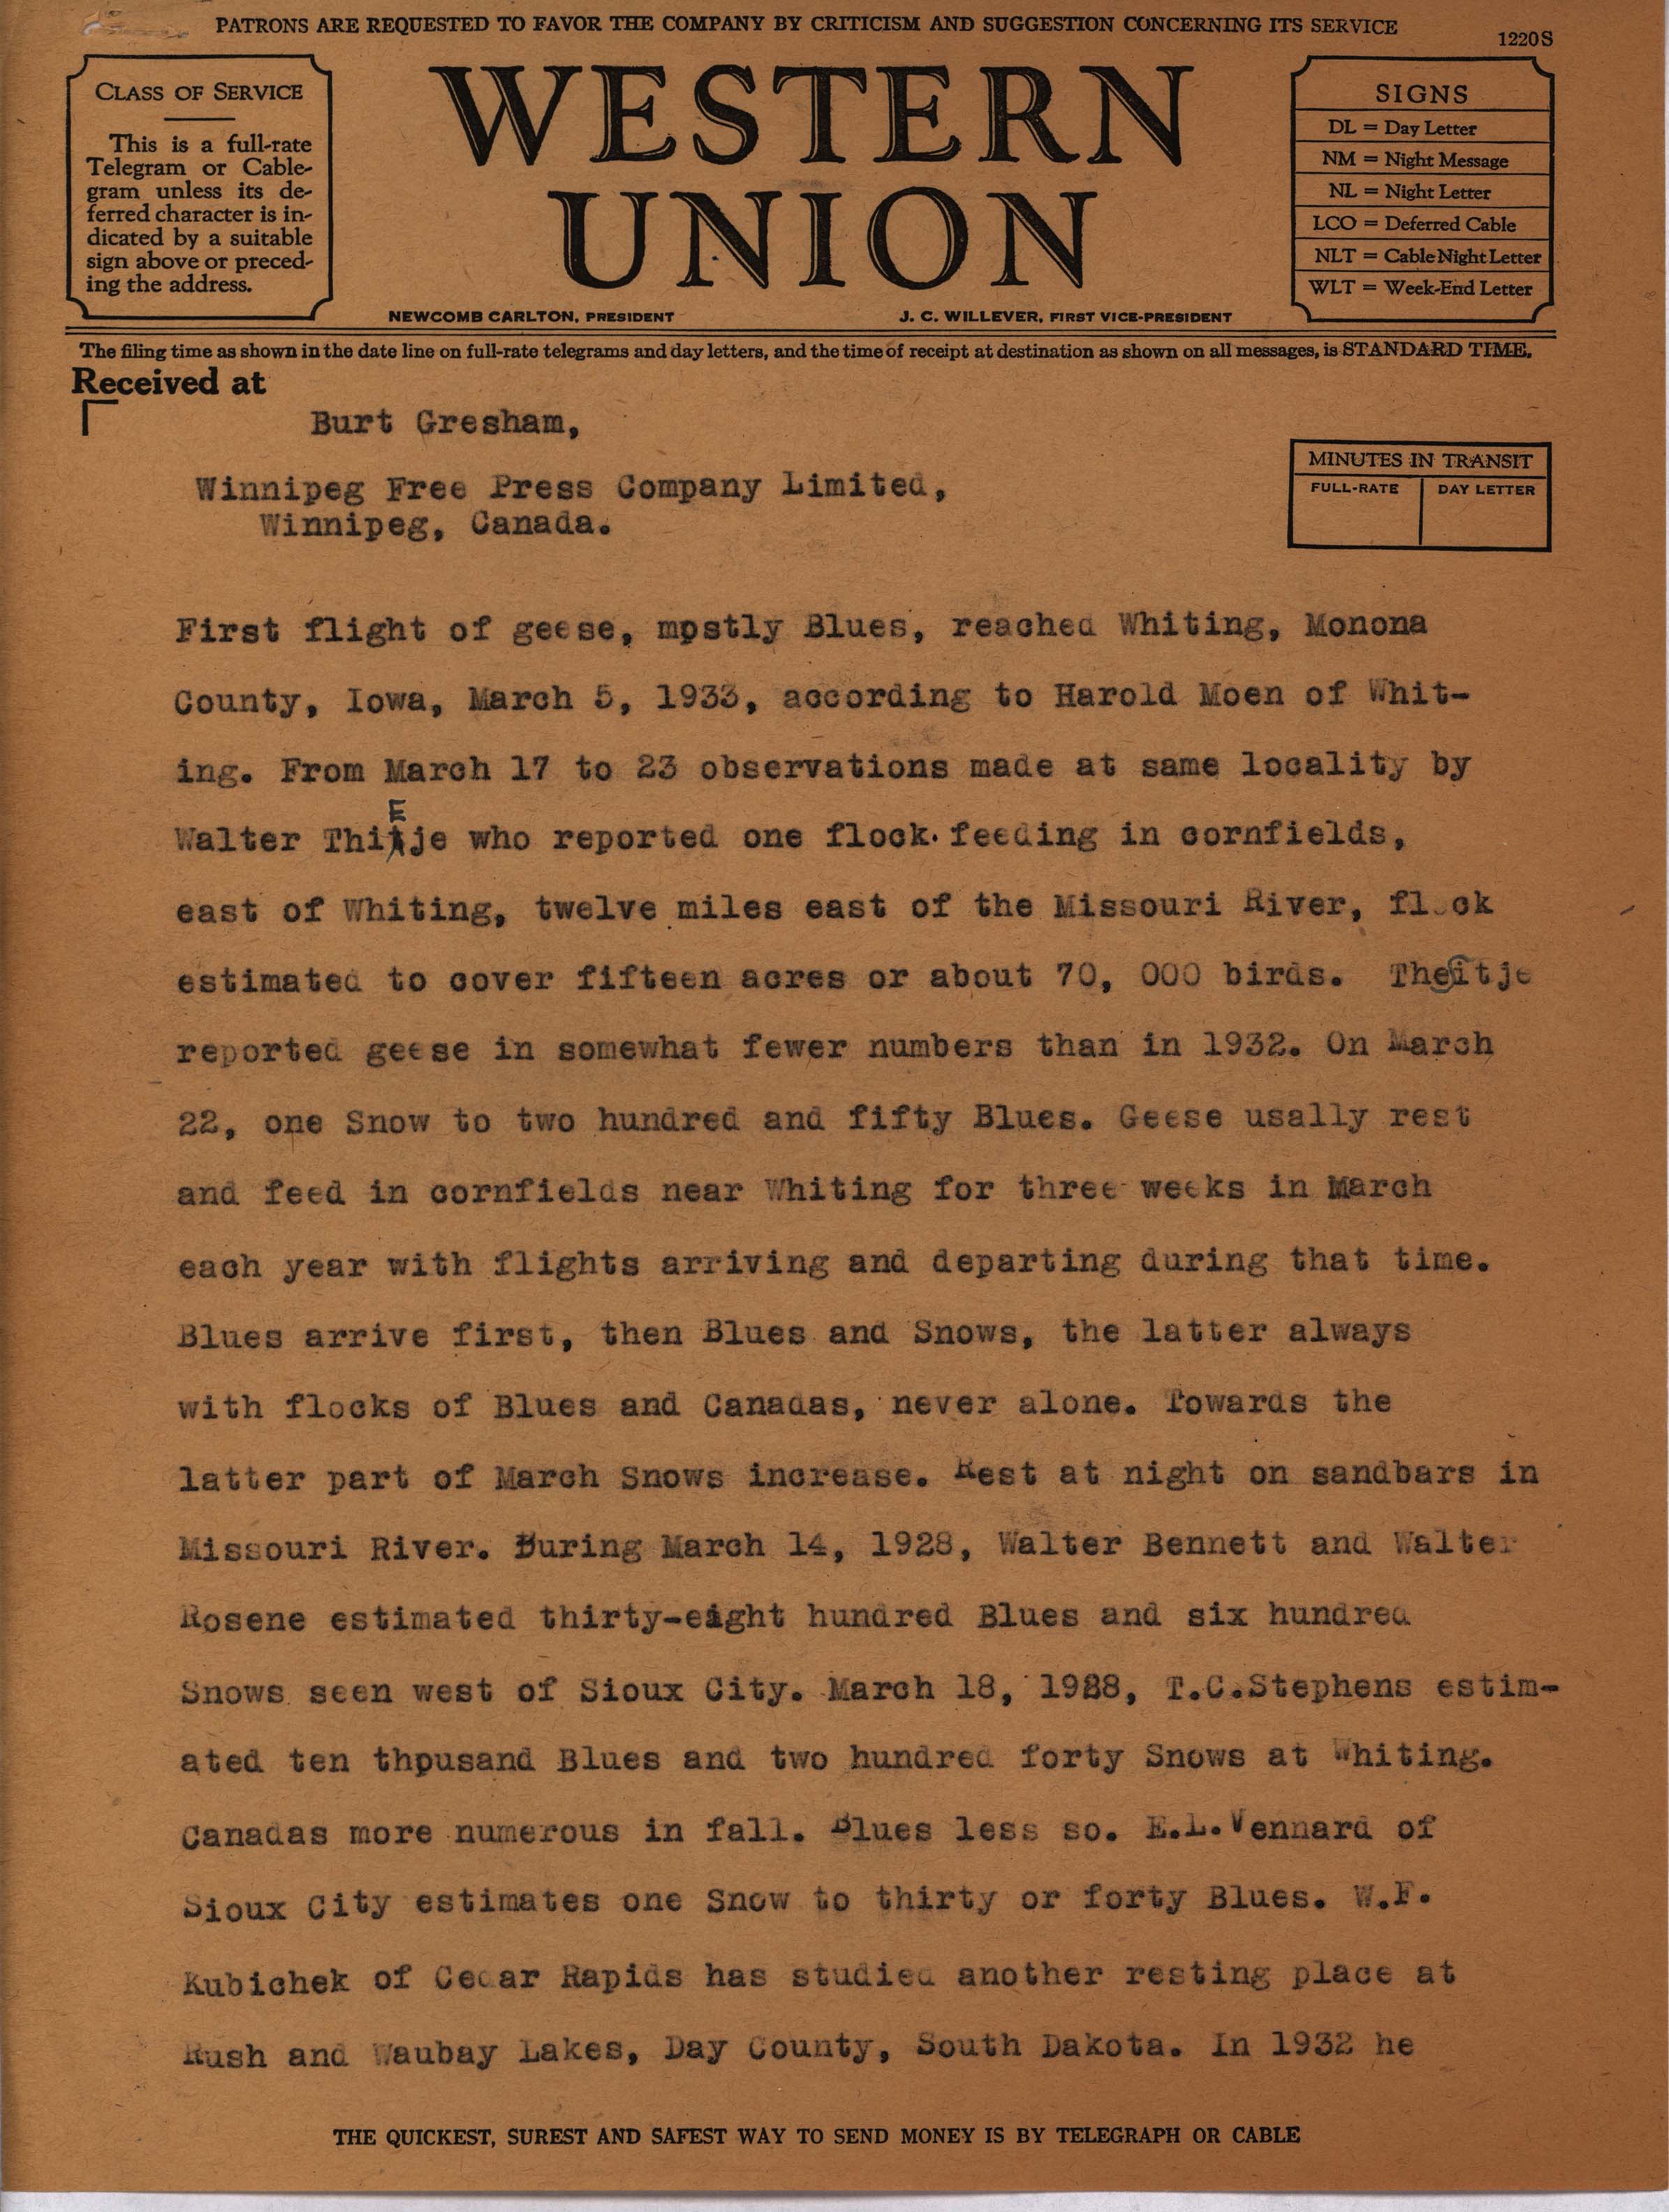 Philip DuMont telegram to Burt Gresham regarding Goose migration, Spring 1933